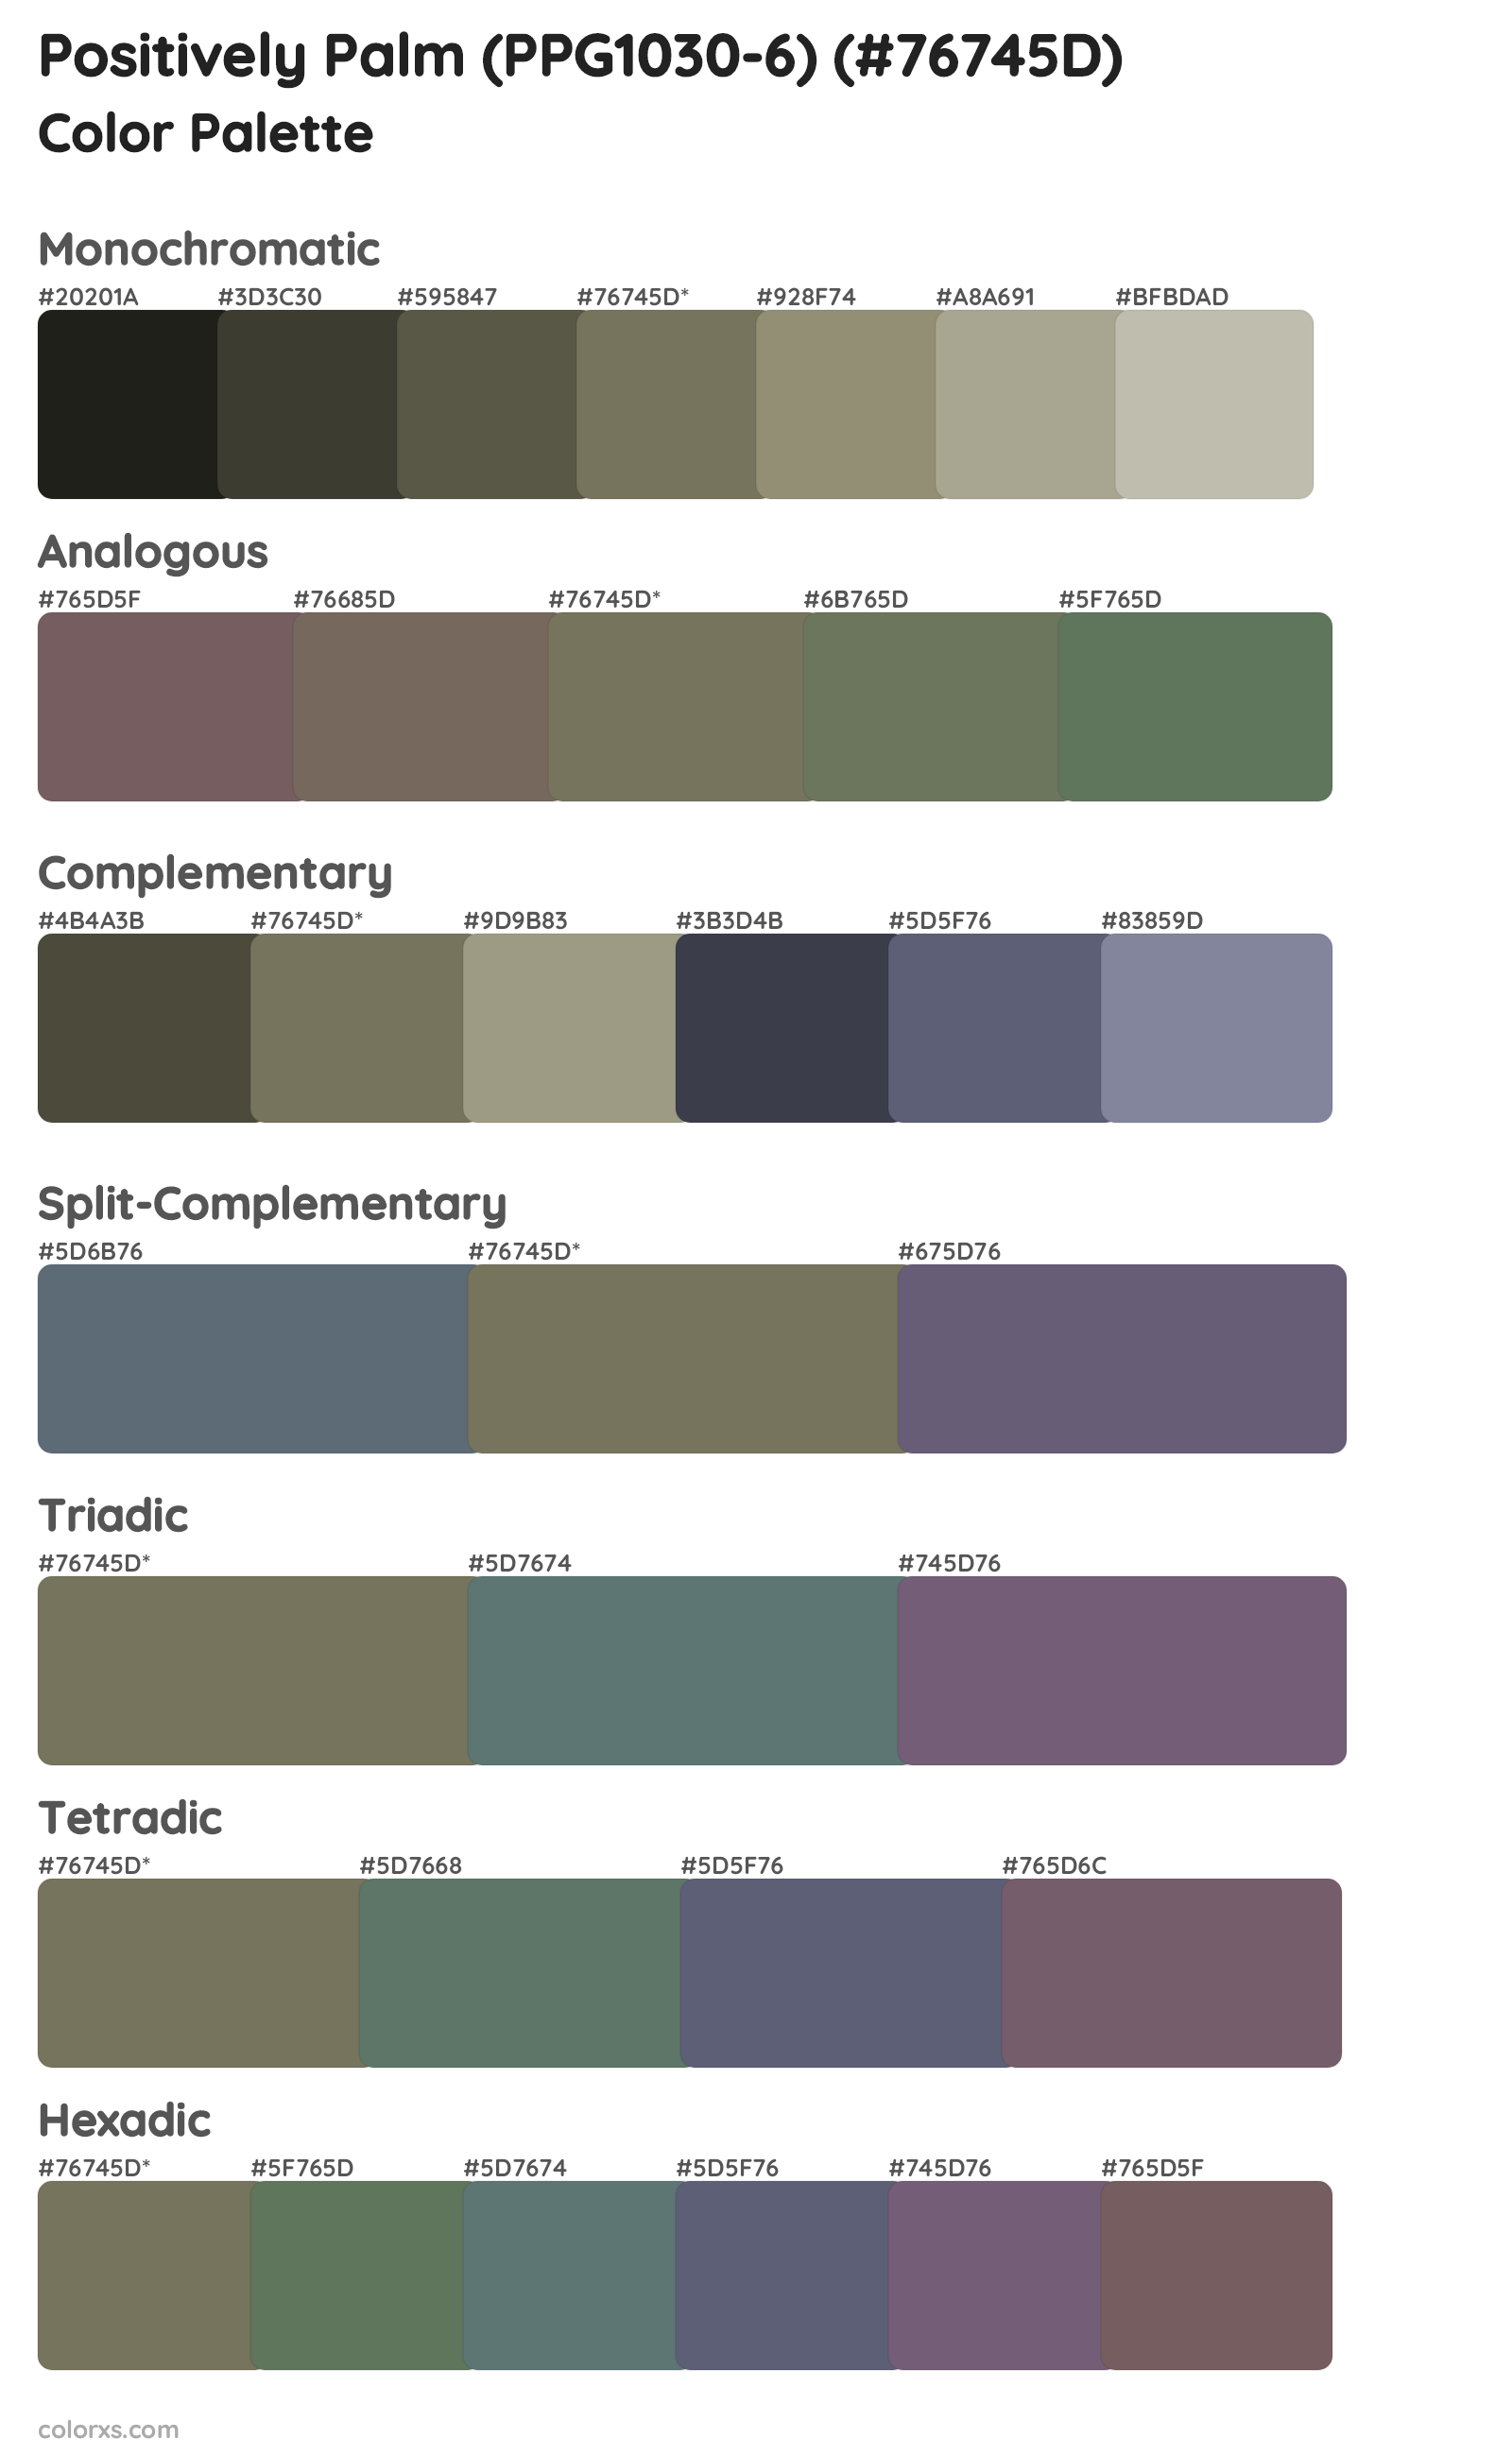 Positively Palm (PPG1030-6) Color Scheme Palettes